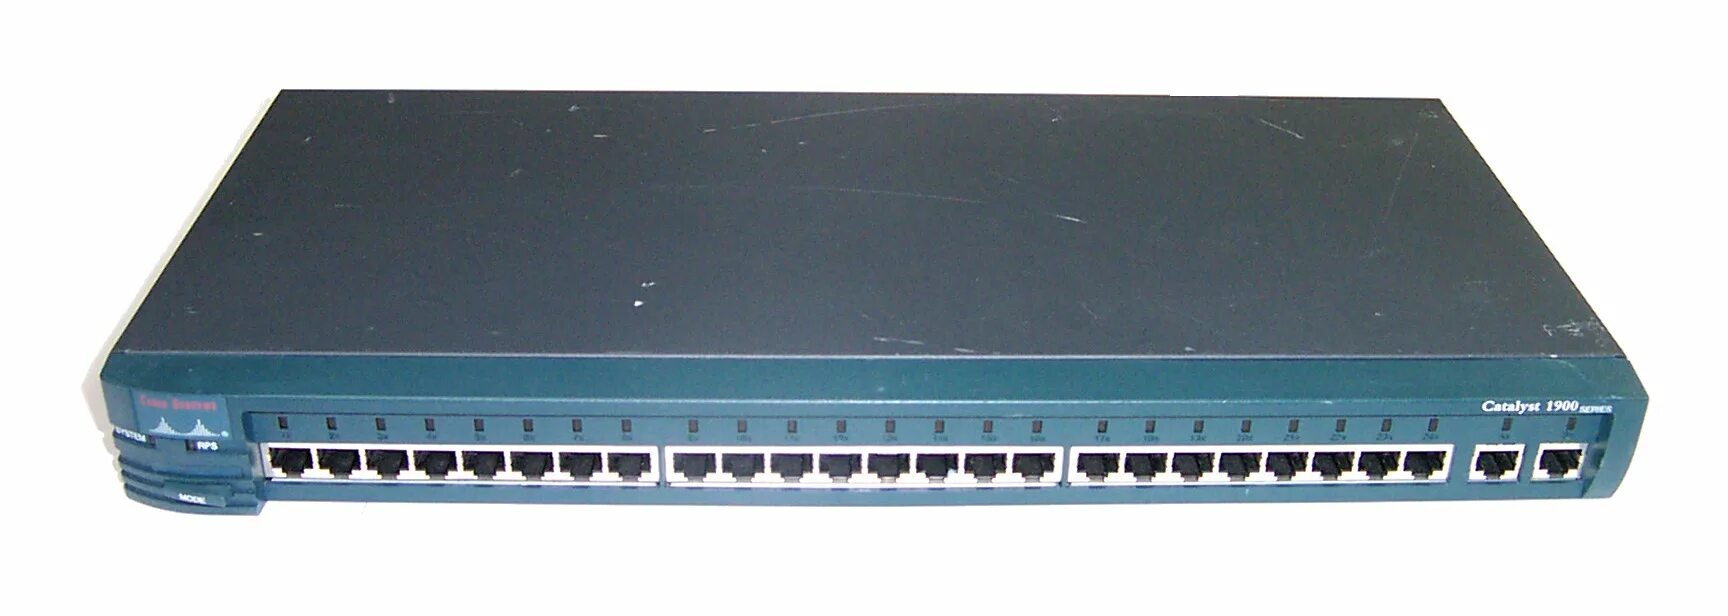 1900 24. Cisco Catalyst 1900 Switch. Коммутатор Cisco 24 порта. Маршрутизатор Cisco 1900. Cisco Catalyst 1924 WS-c1924-a.